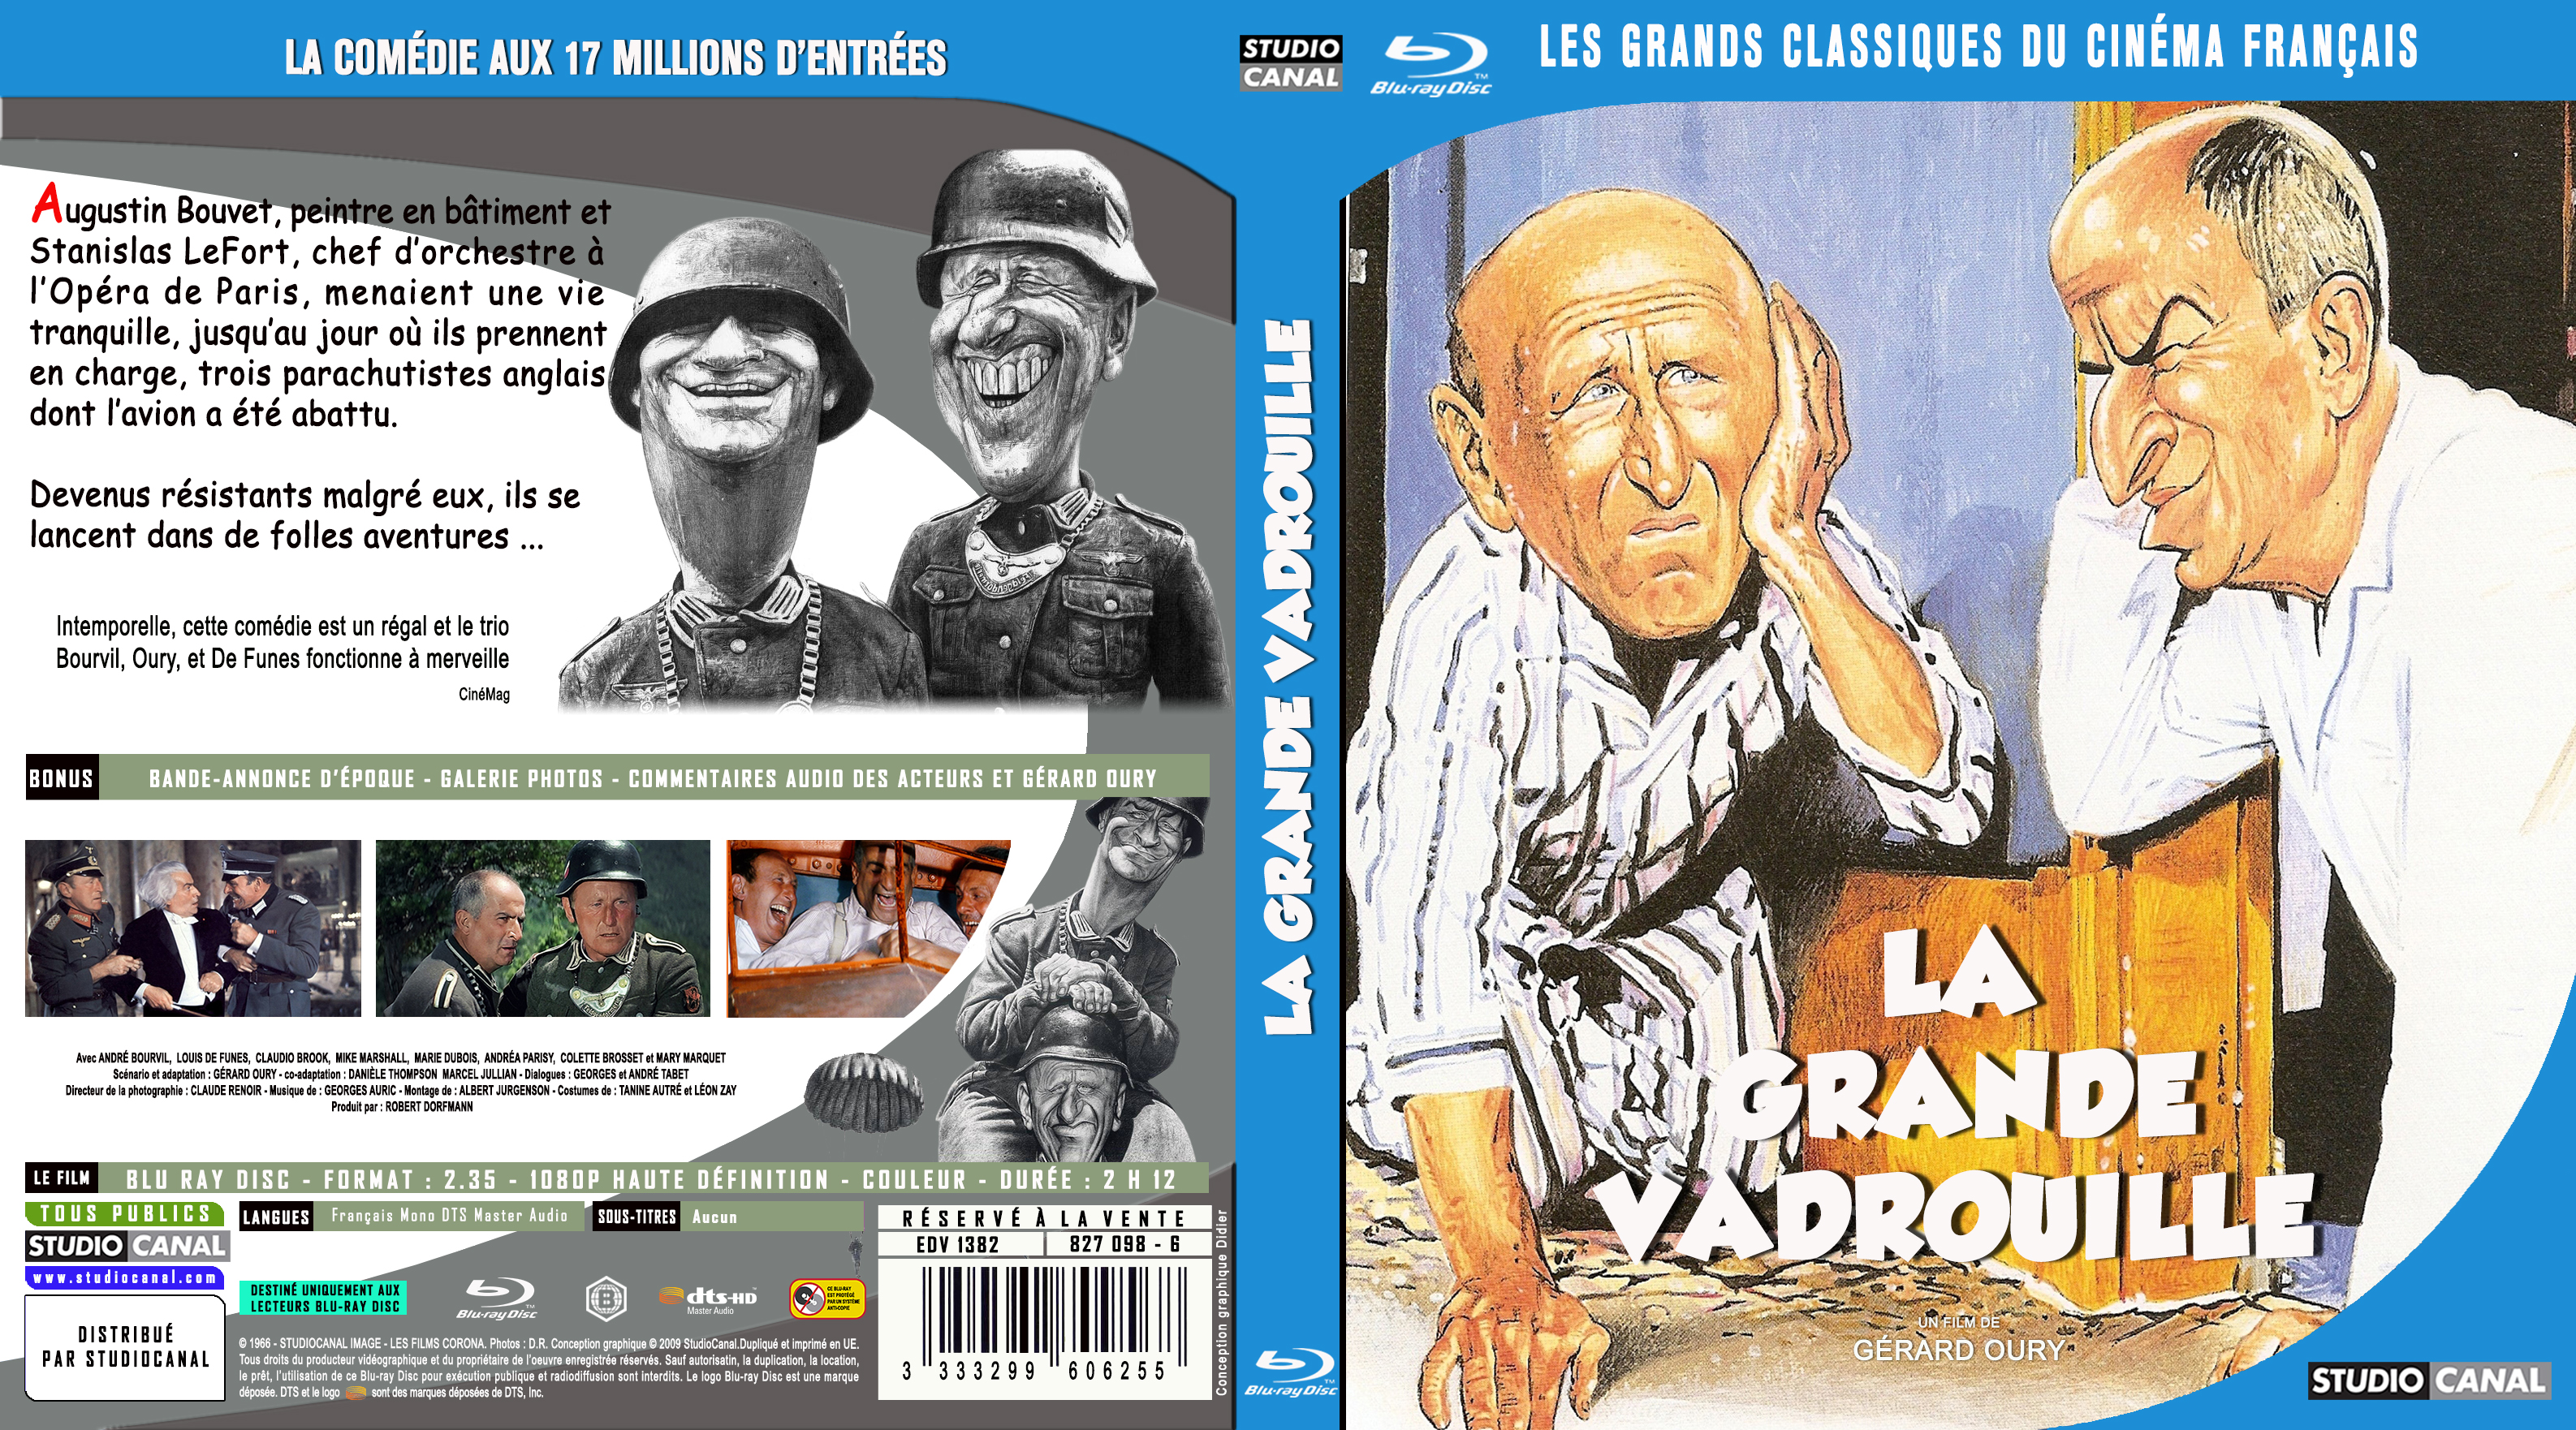 Jaquette DVD La grande vadrouille custom (BLU-RAY) v2